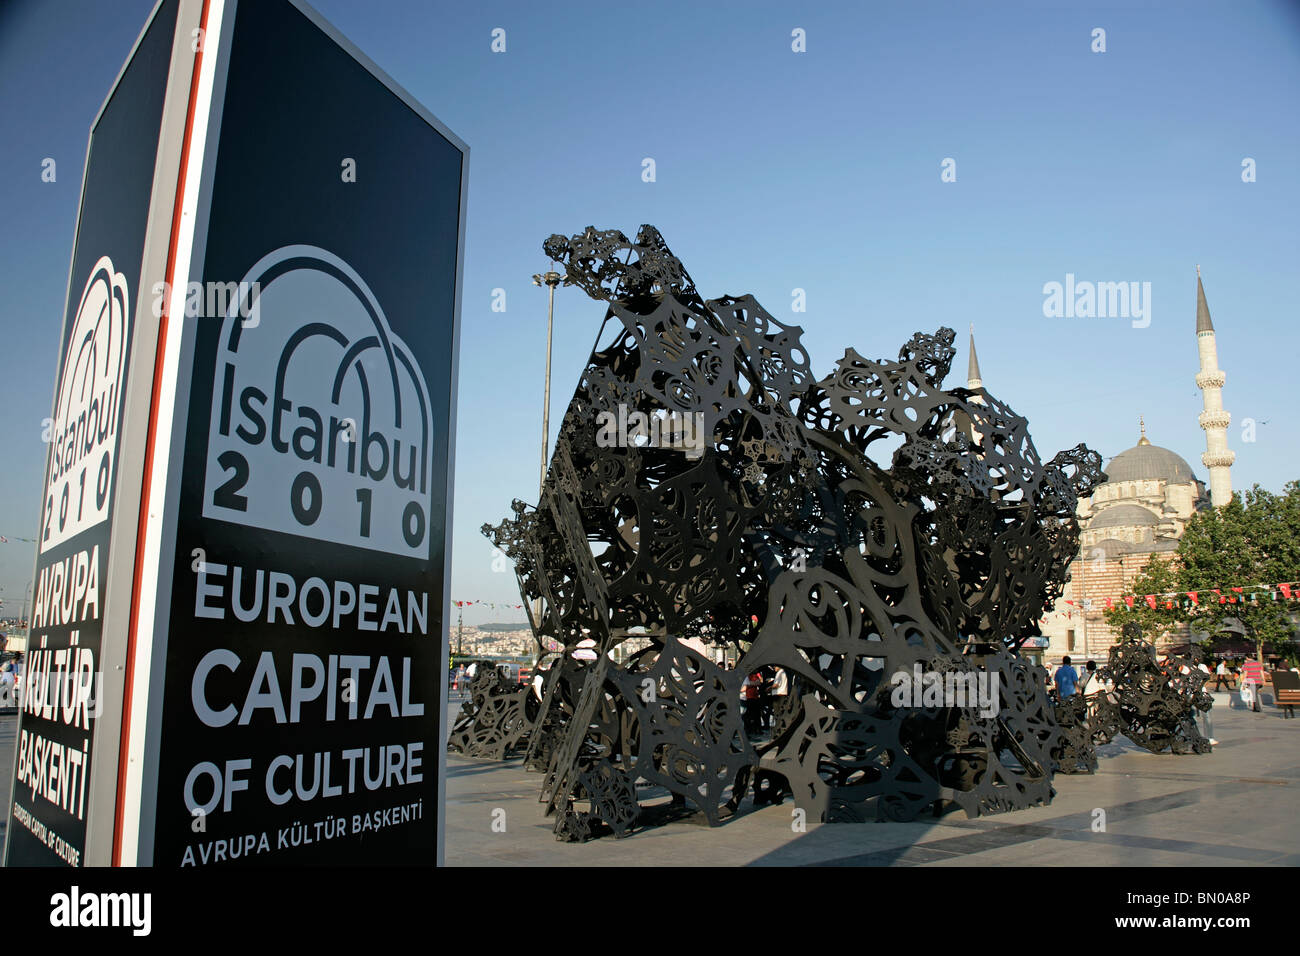 Istanbul 2010 Capitale Europea della Cultura: la scultura contemporanea da parte della nuova moschea nel quartiere Eminonu Foto Stock